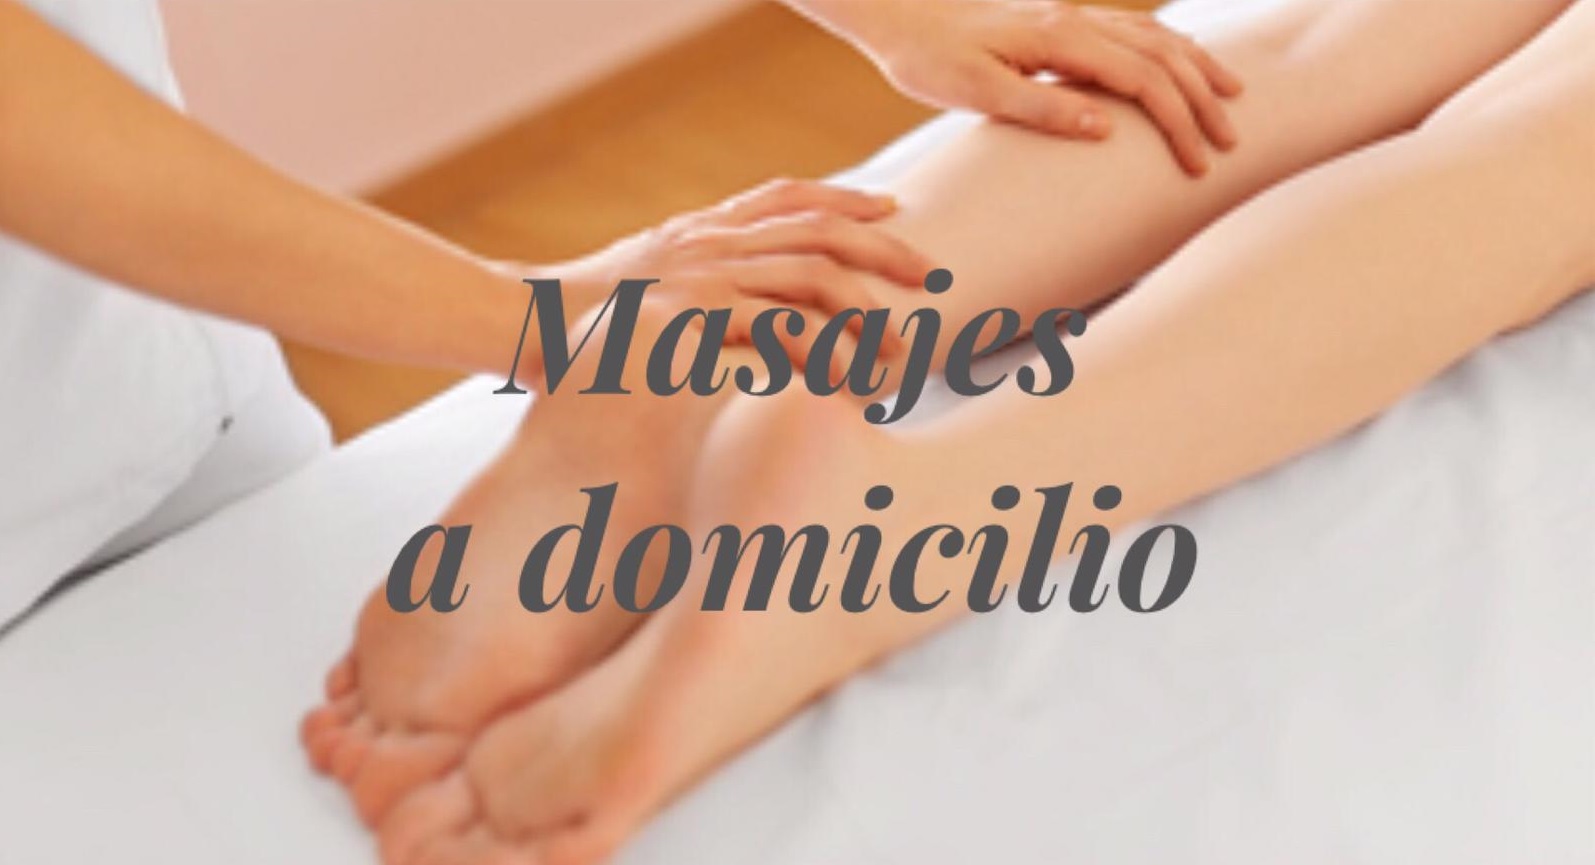 Masaje Terapeutico A Domicilio Online, 57% OFF | fileverest.com